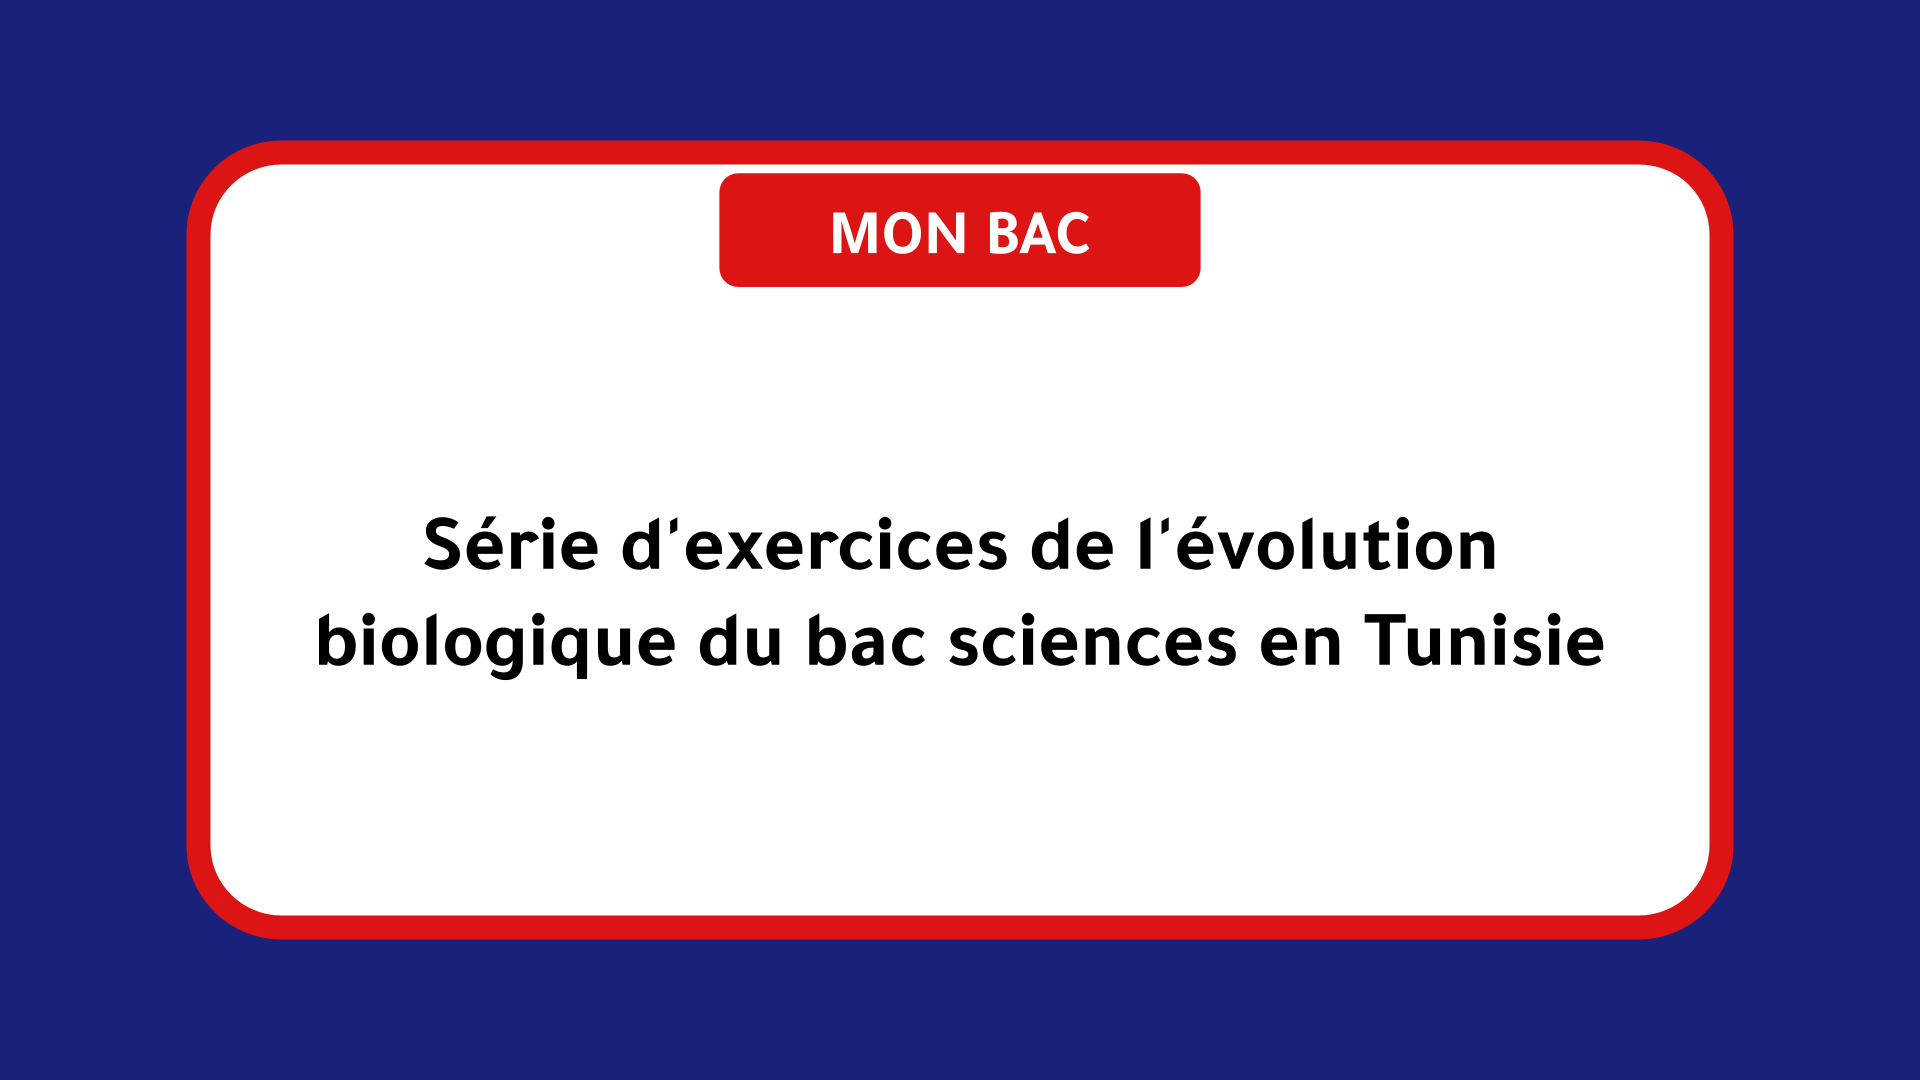 Série d'exercices de l'évolution biologique bac sciences Tunisie